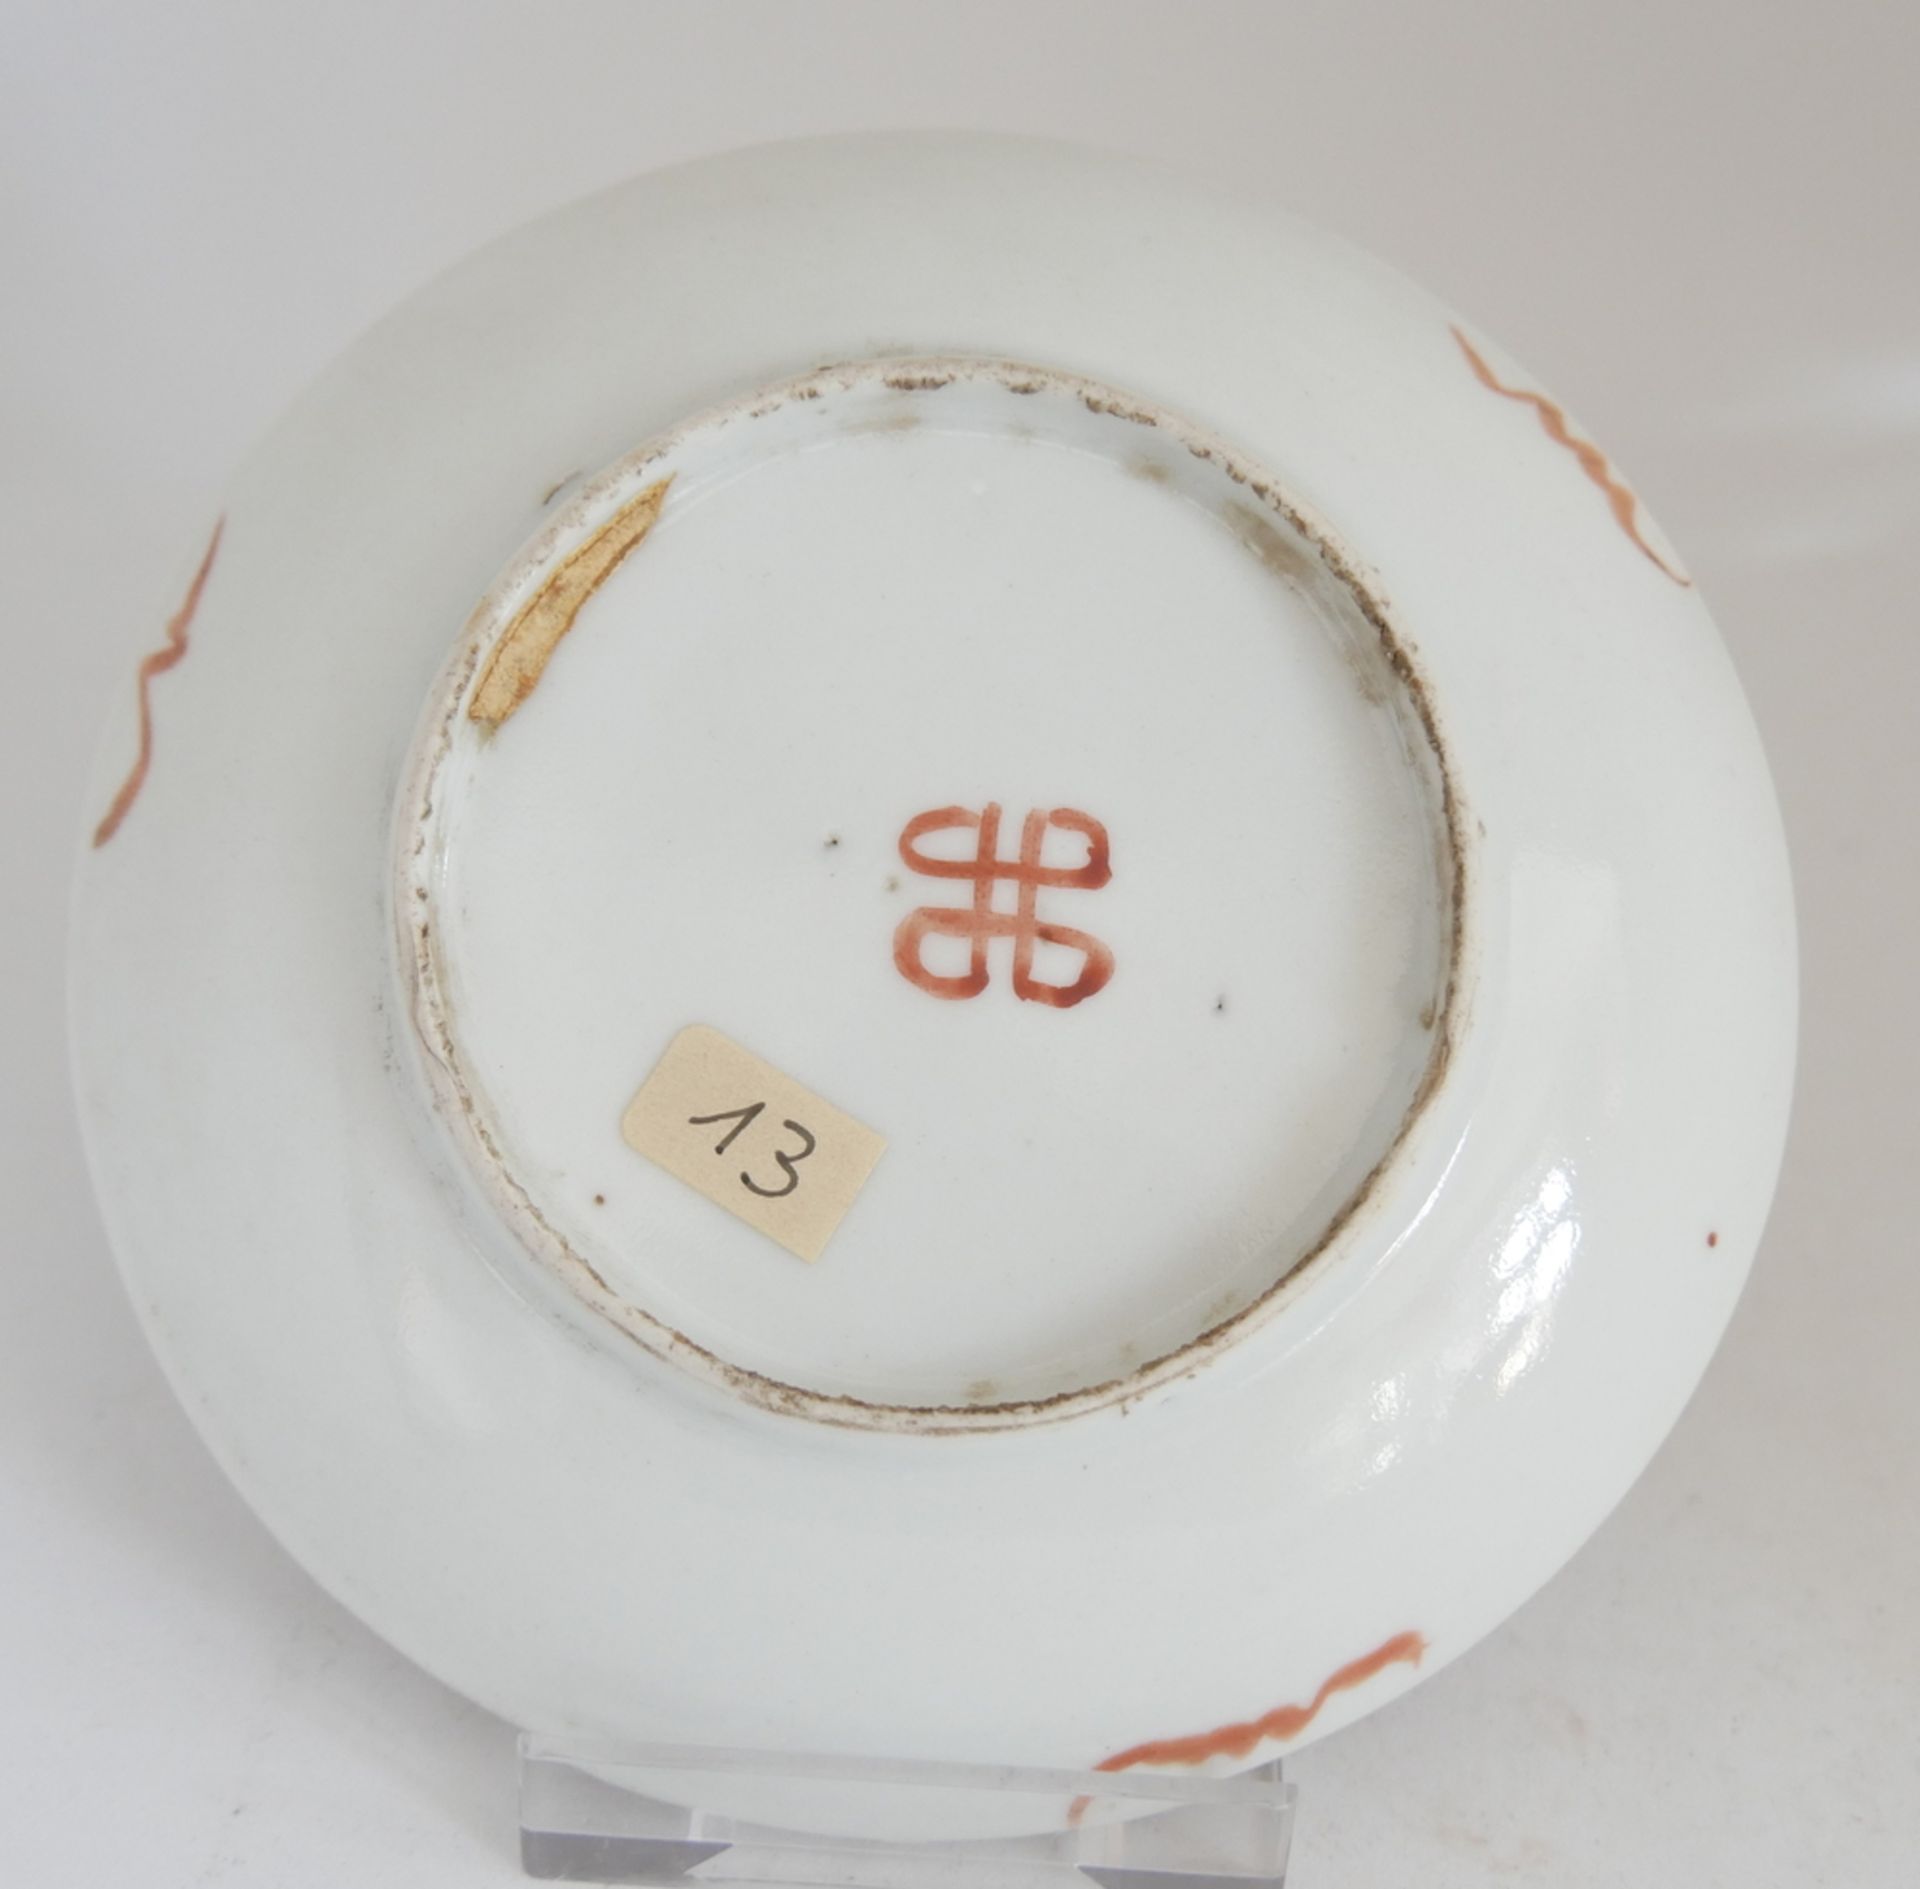 Aus Sammelauflösung! Altes chinesisches Porzellan des 19. Jahrhunderts. Schale mit Emailfarben, - Bild 2 aus 2